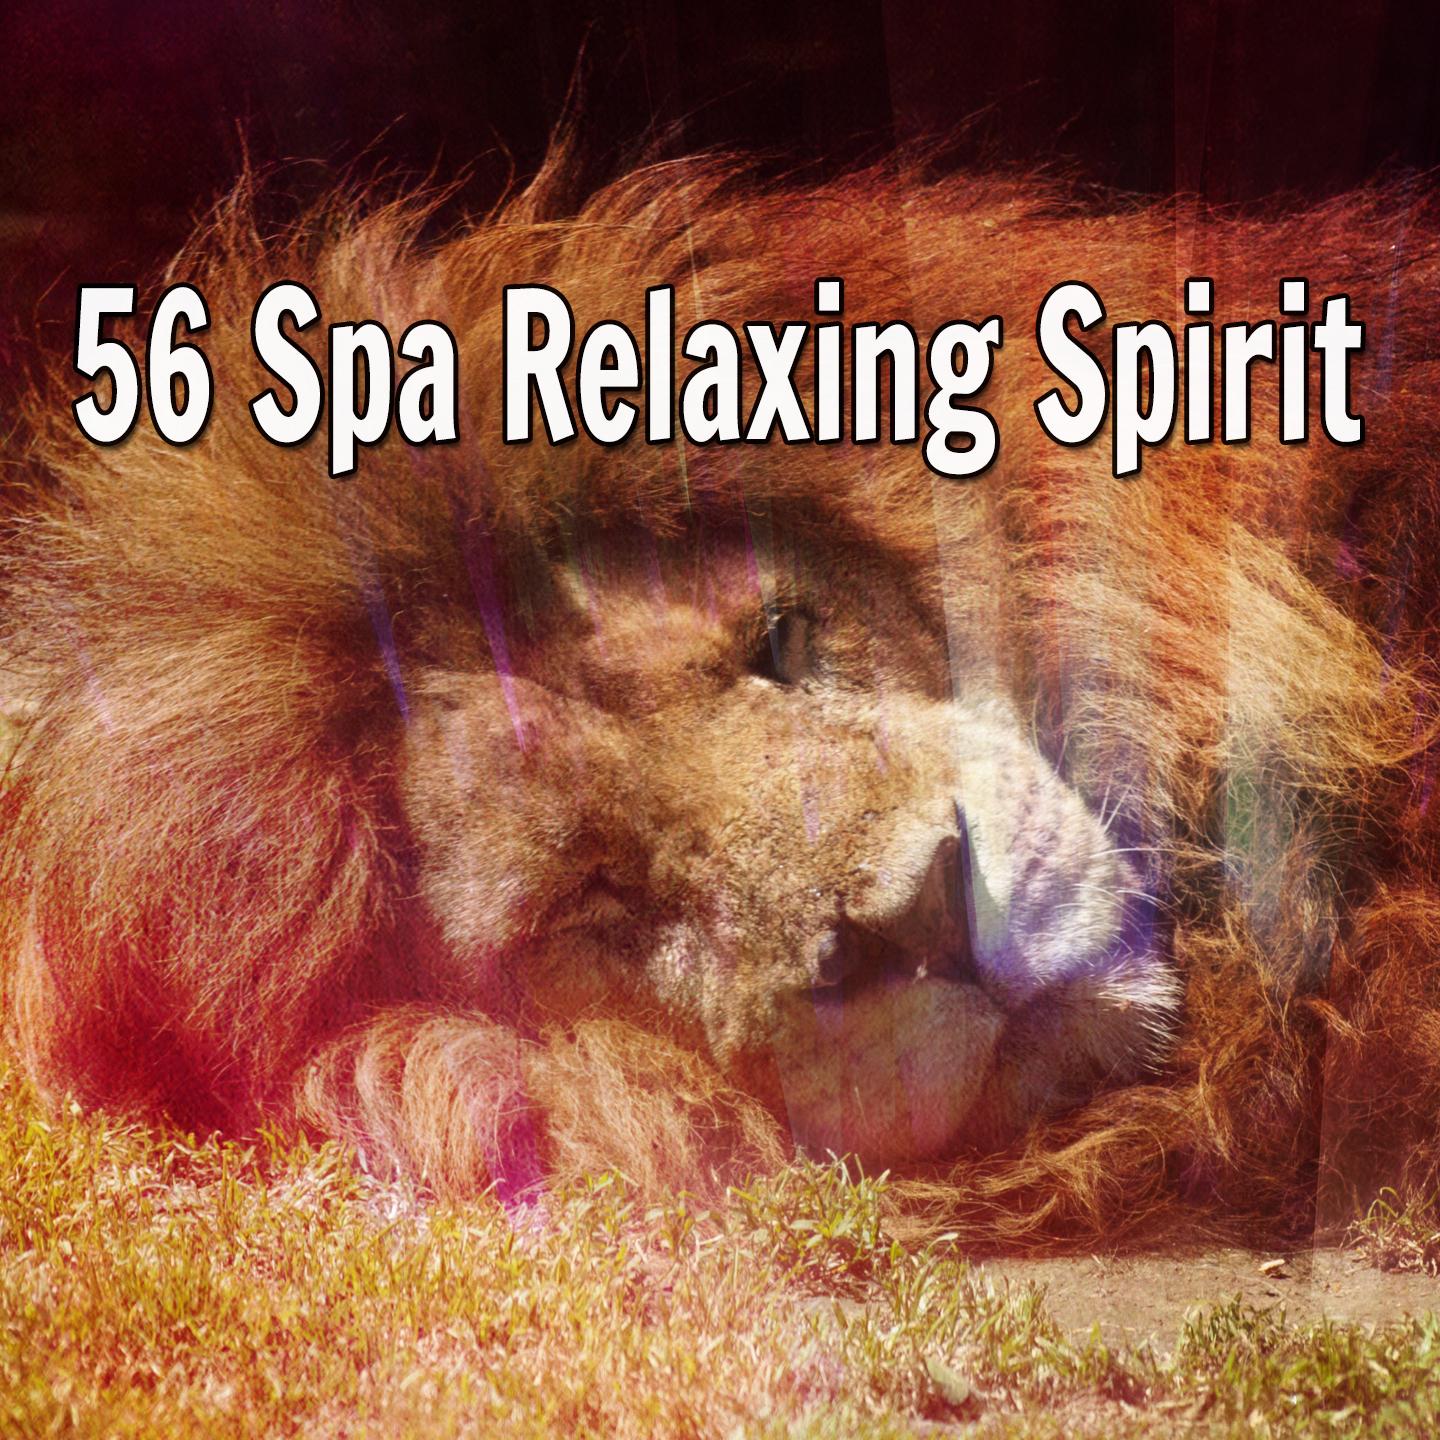 56 Spa Relaxing Spirit